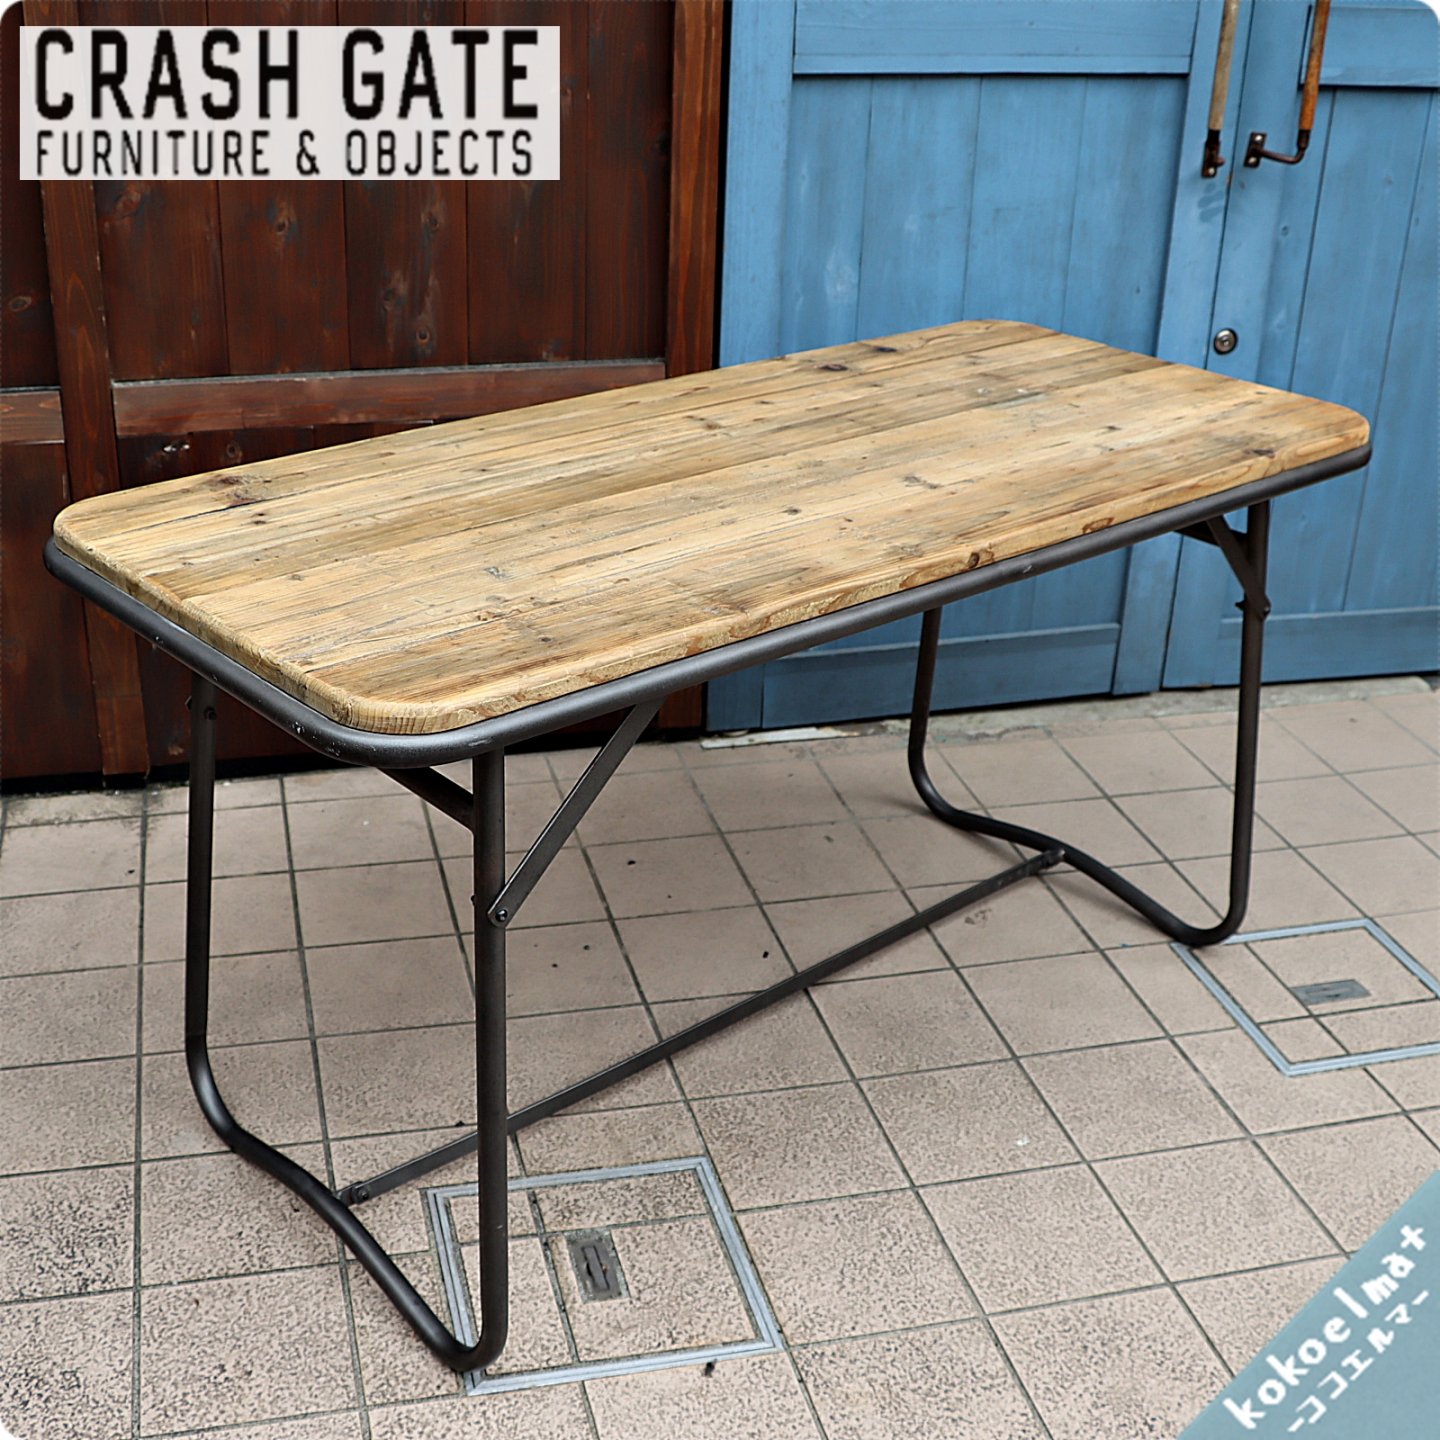 CRASH GATE(クラッシュゲート)/ノットアンティークスのBATON ?(バトン)ダイニングテーブルです。ヴィンテージ感のあるパイン古木材がブルックリンスタイルなど男前インテリアにおススメ♪  - kokoelma -ココエルマ- 雑貨・中古家具・北欧家具・アンティーク家具の通販 ...